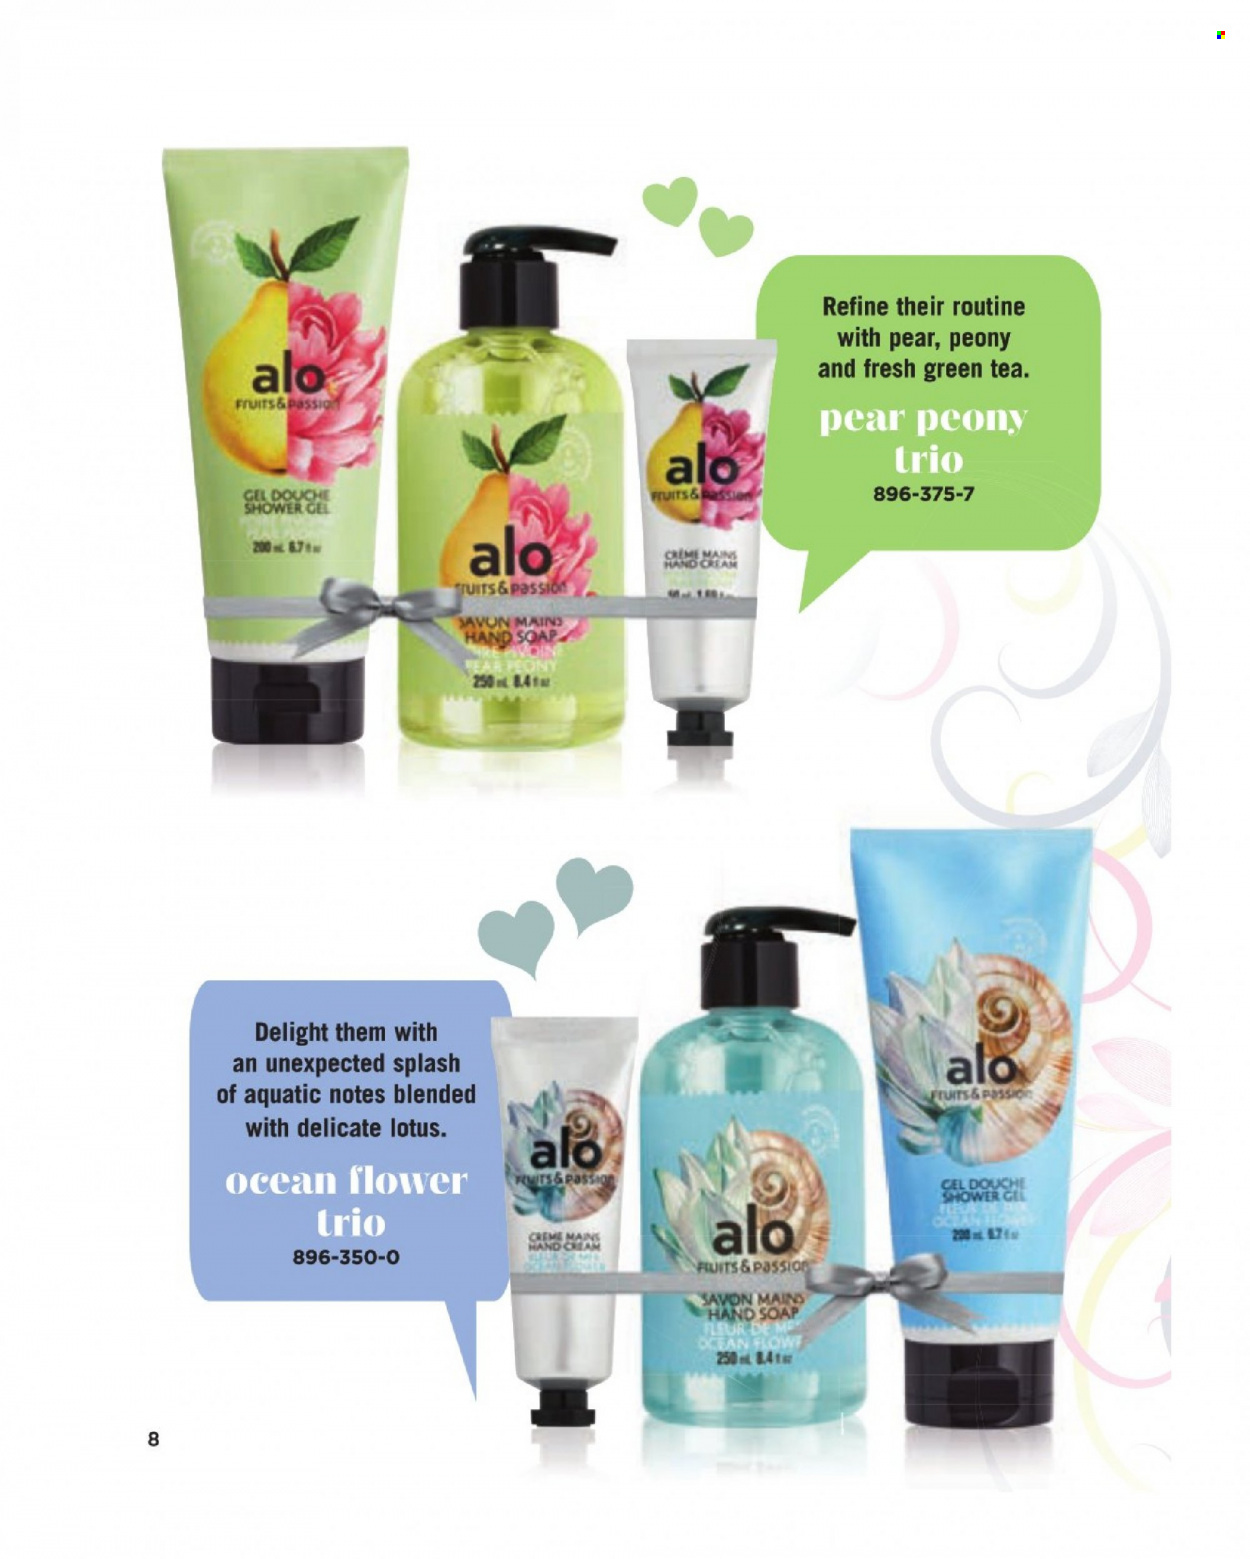 Circulaire Avon - Produits soldés - Lotus, savon, gel douche, crème mains. Page 8.